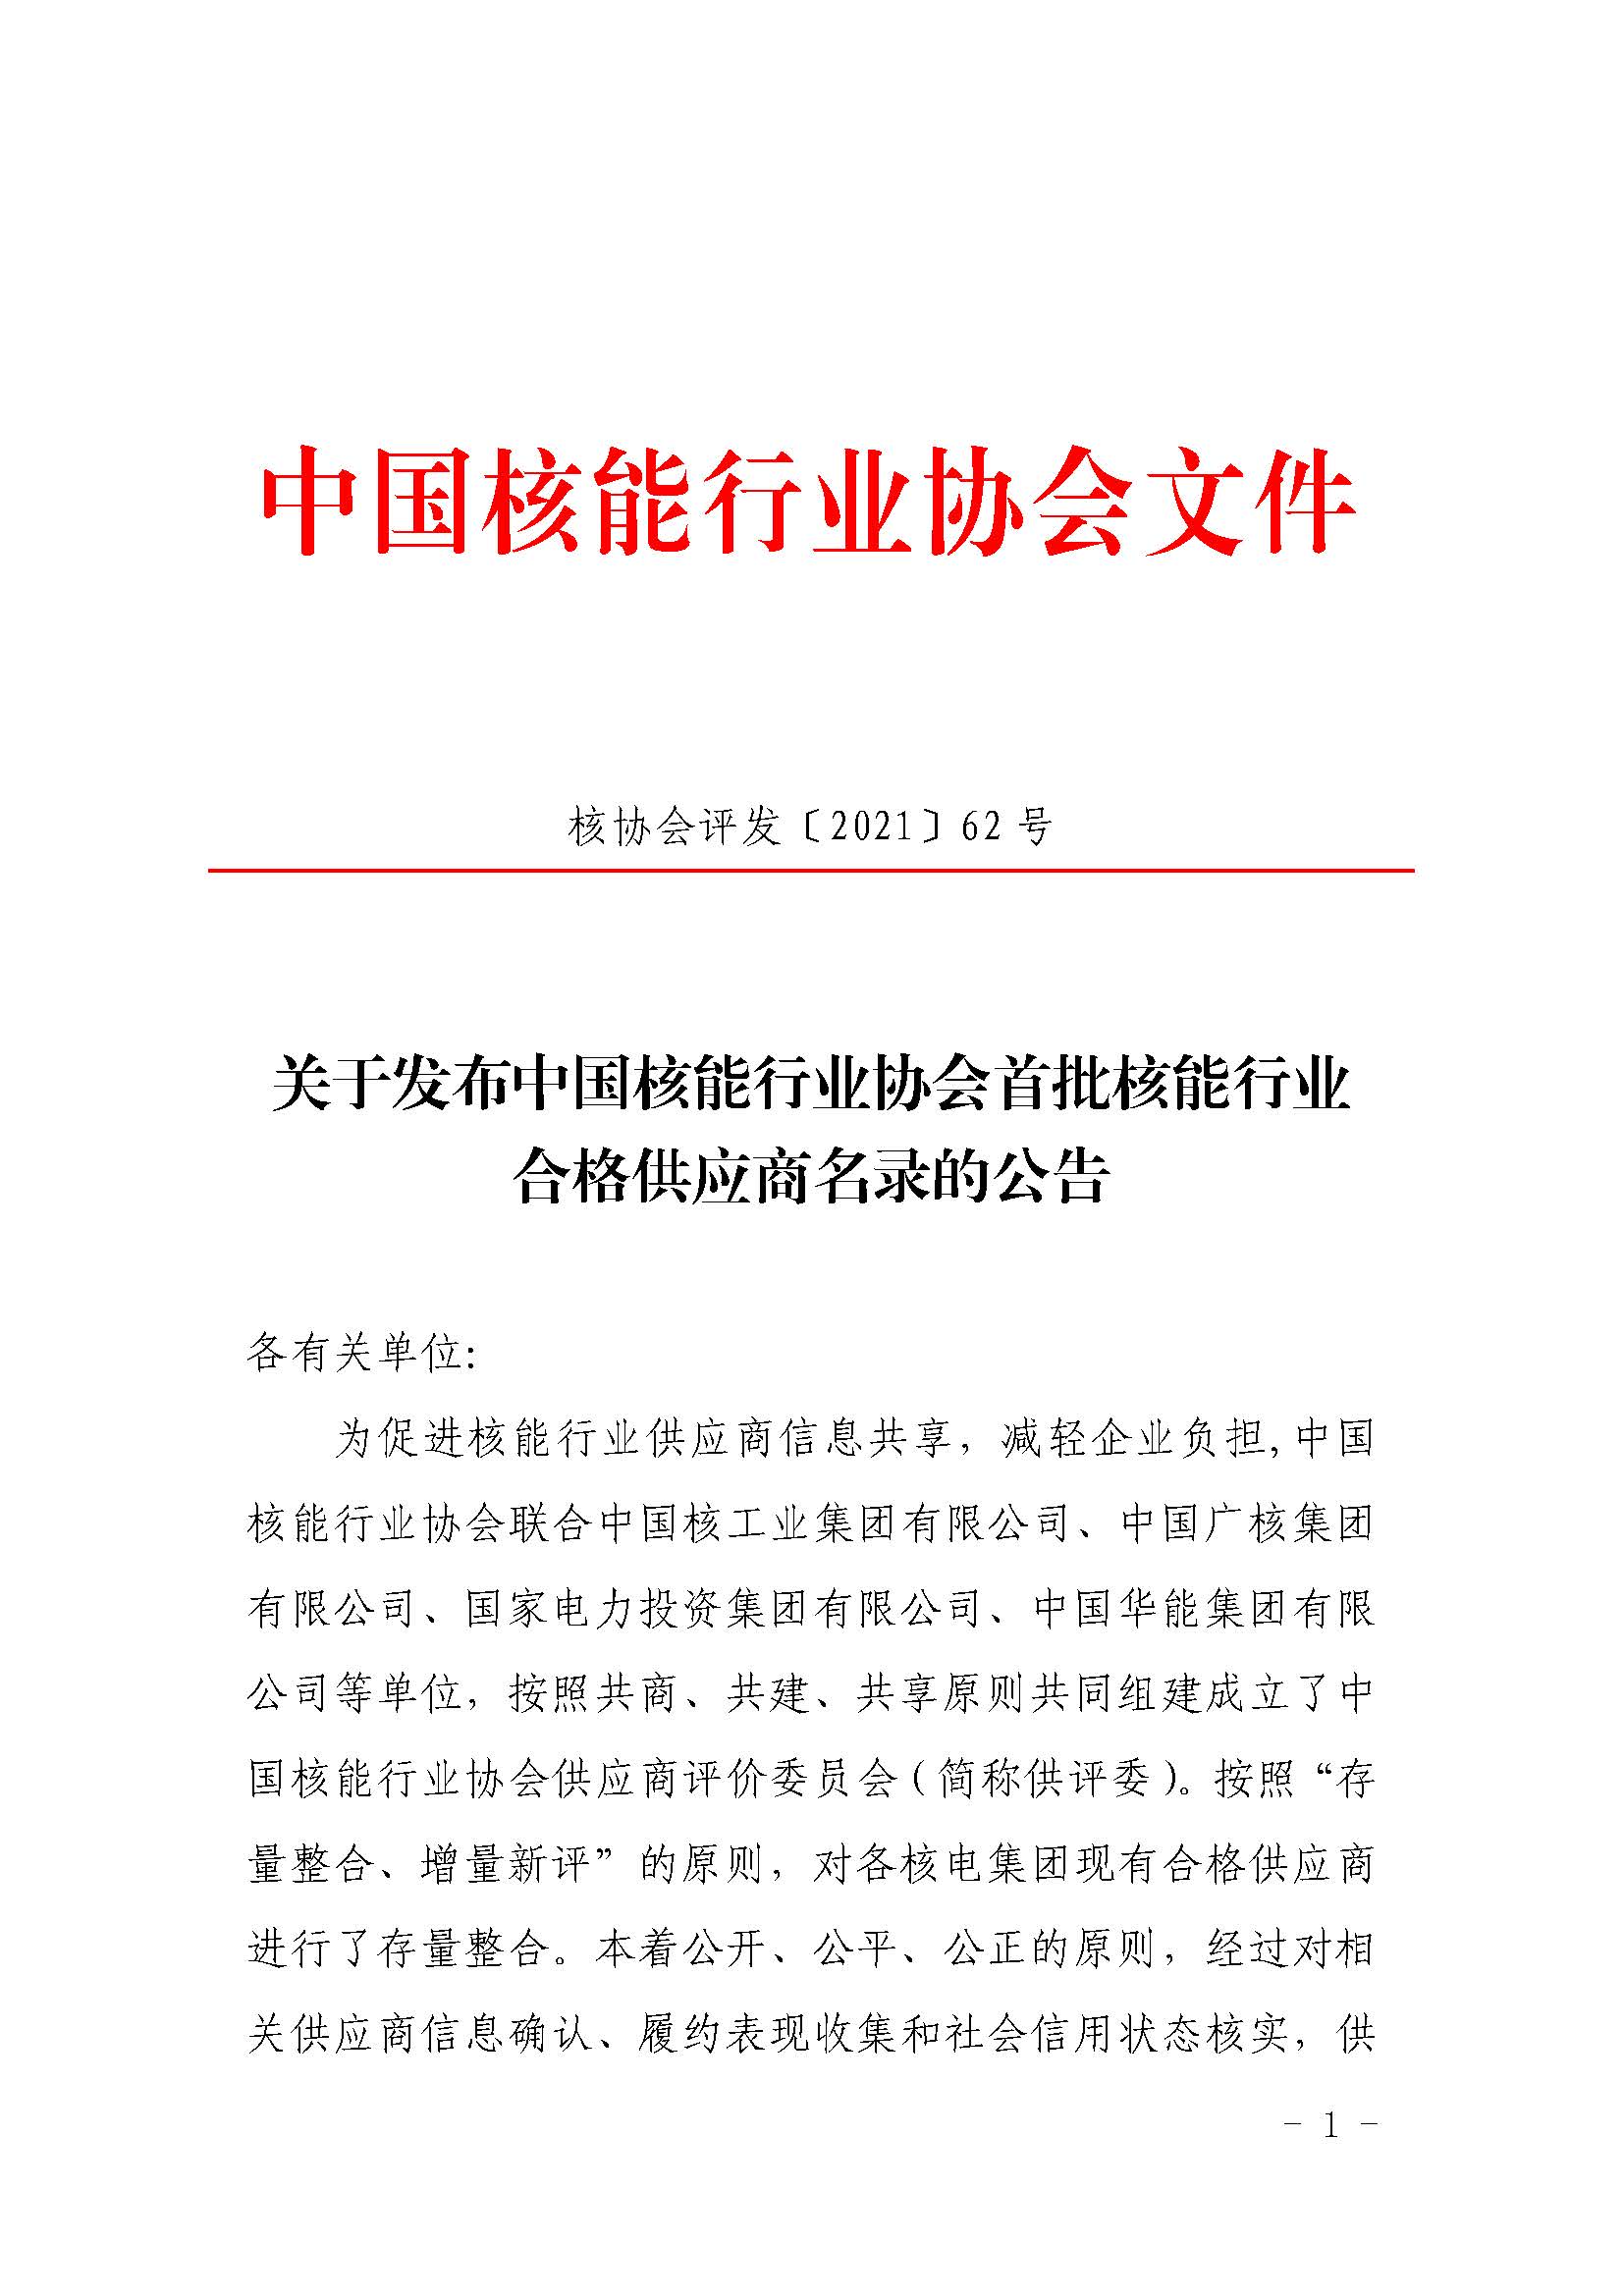 关于发布中国核能行业协会首批核能行业合格供应商名录的公告_页面_1.jpg